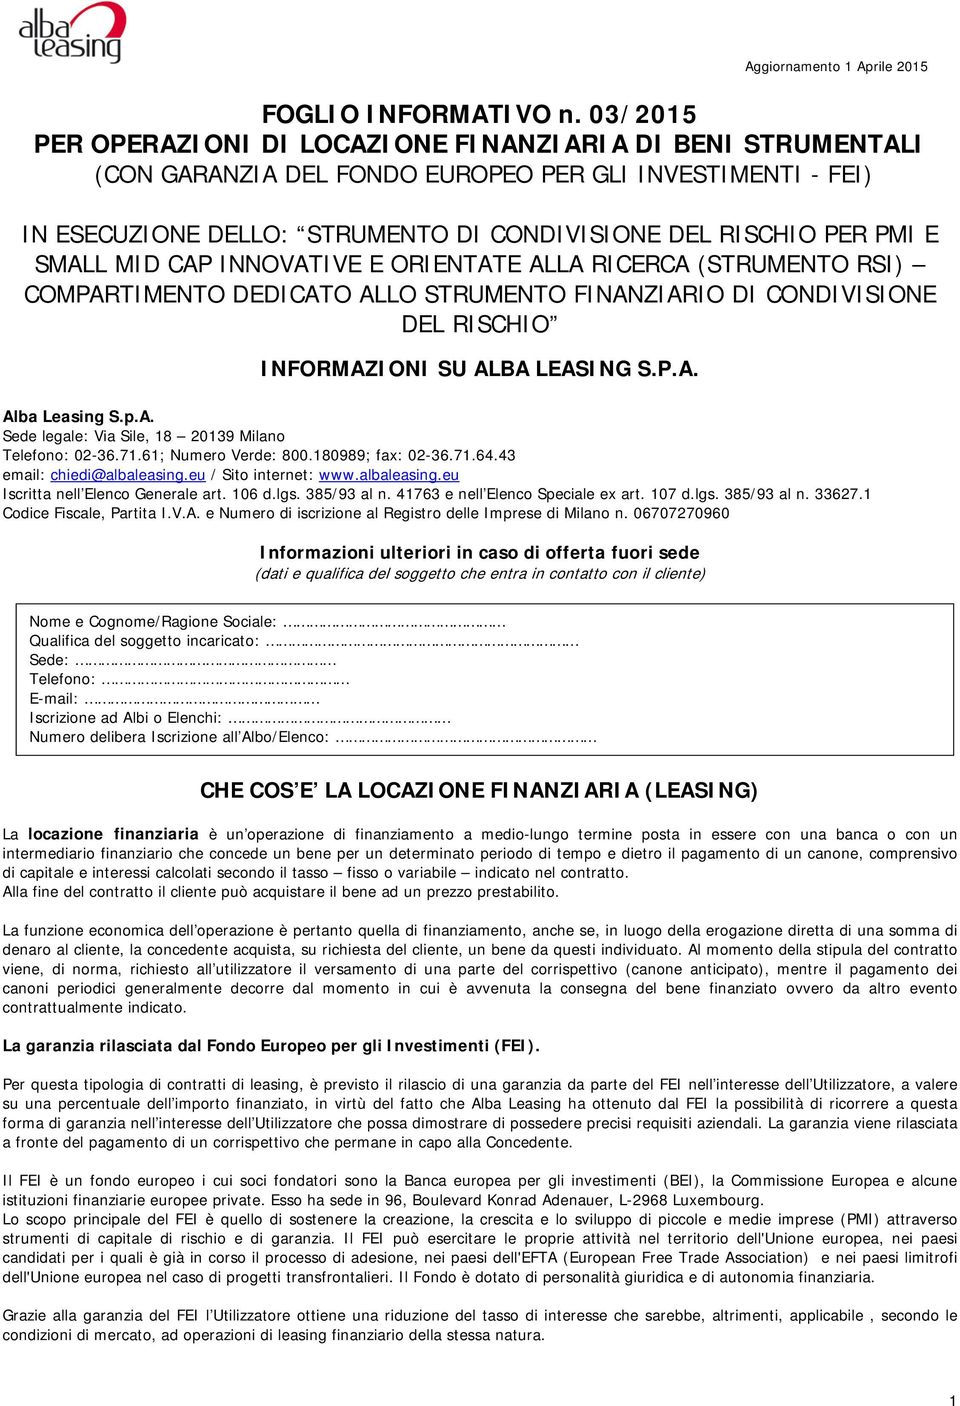 SMALL MID CAP INNOVATIVE E ORIENTATE ALLA RICERCA (STRUMENTO RSI) COMPARTIMENTO DEDICATO ALLO STRUMENTO FINANZIARIO DI CONDIVISIONE DEL RISCHIO INFORMAZIONI SU ALBA LEASING S.P.A. Alba Leasing S.p.A. Sede legale: Via Sile, 18 20139 Milano Telefono: 02-36.